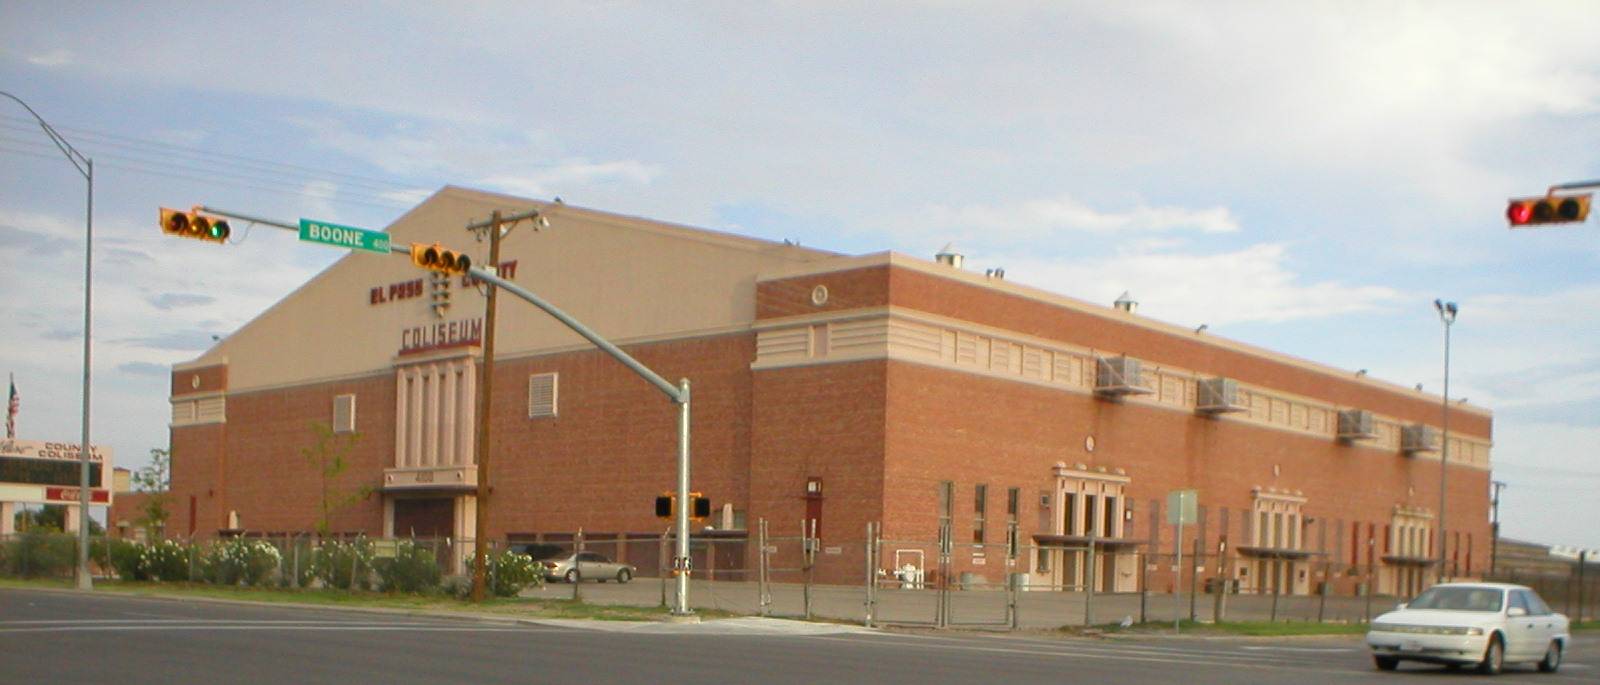 El Paso County Coliseum Logo